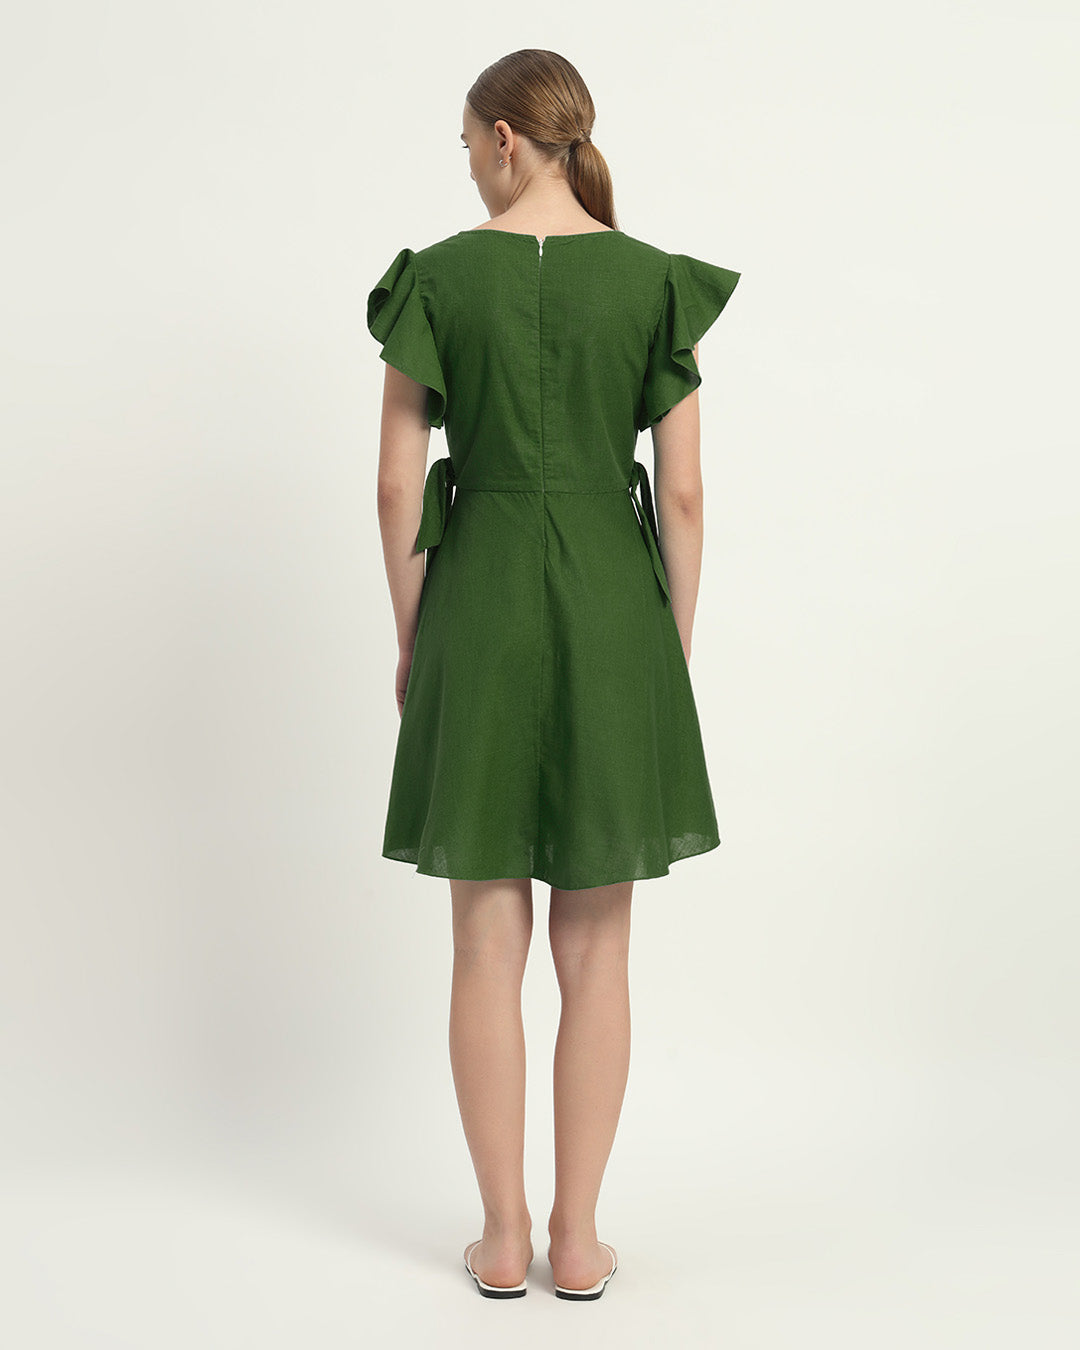 The Fairlie Emerald Cotton Dress